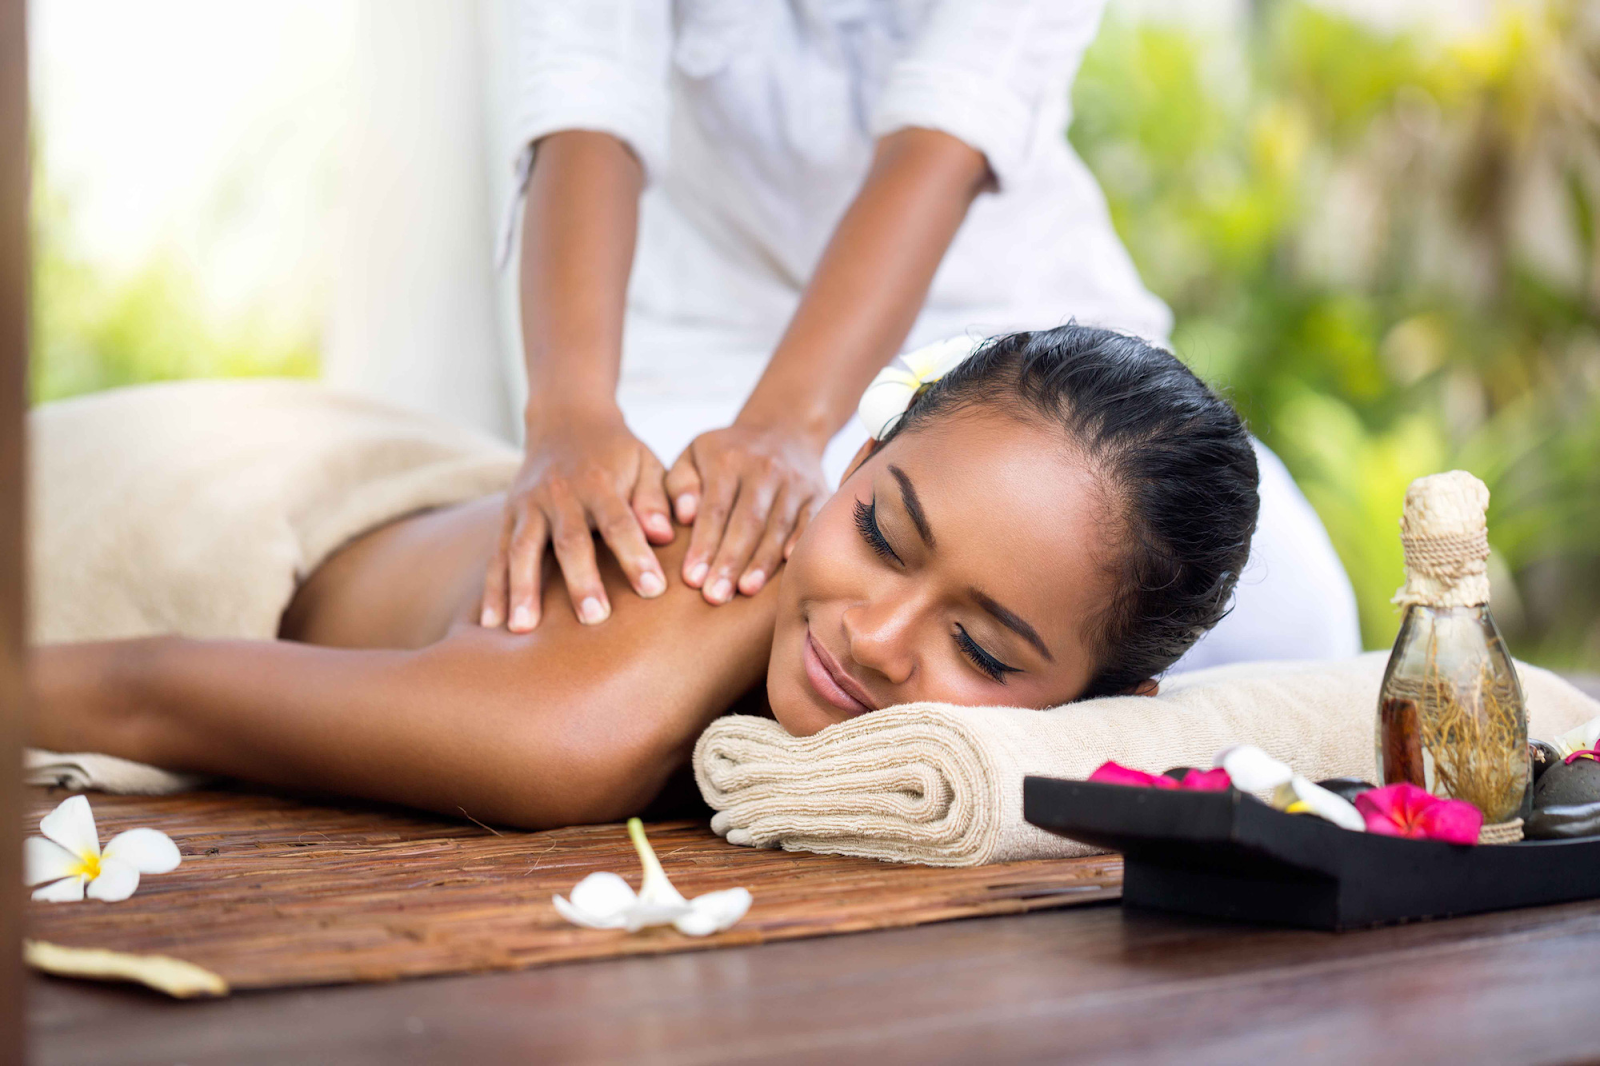 Kỹ thuật massage lưng tại nhà hiệu quả dễ thực hiện - Bossmassage